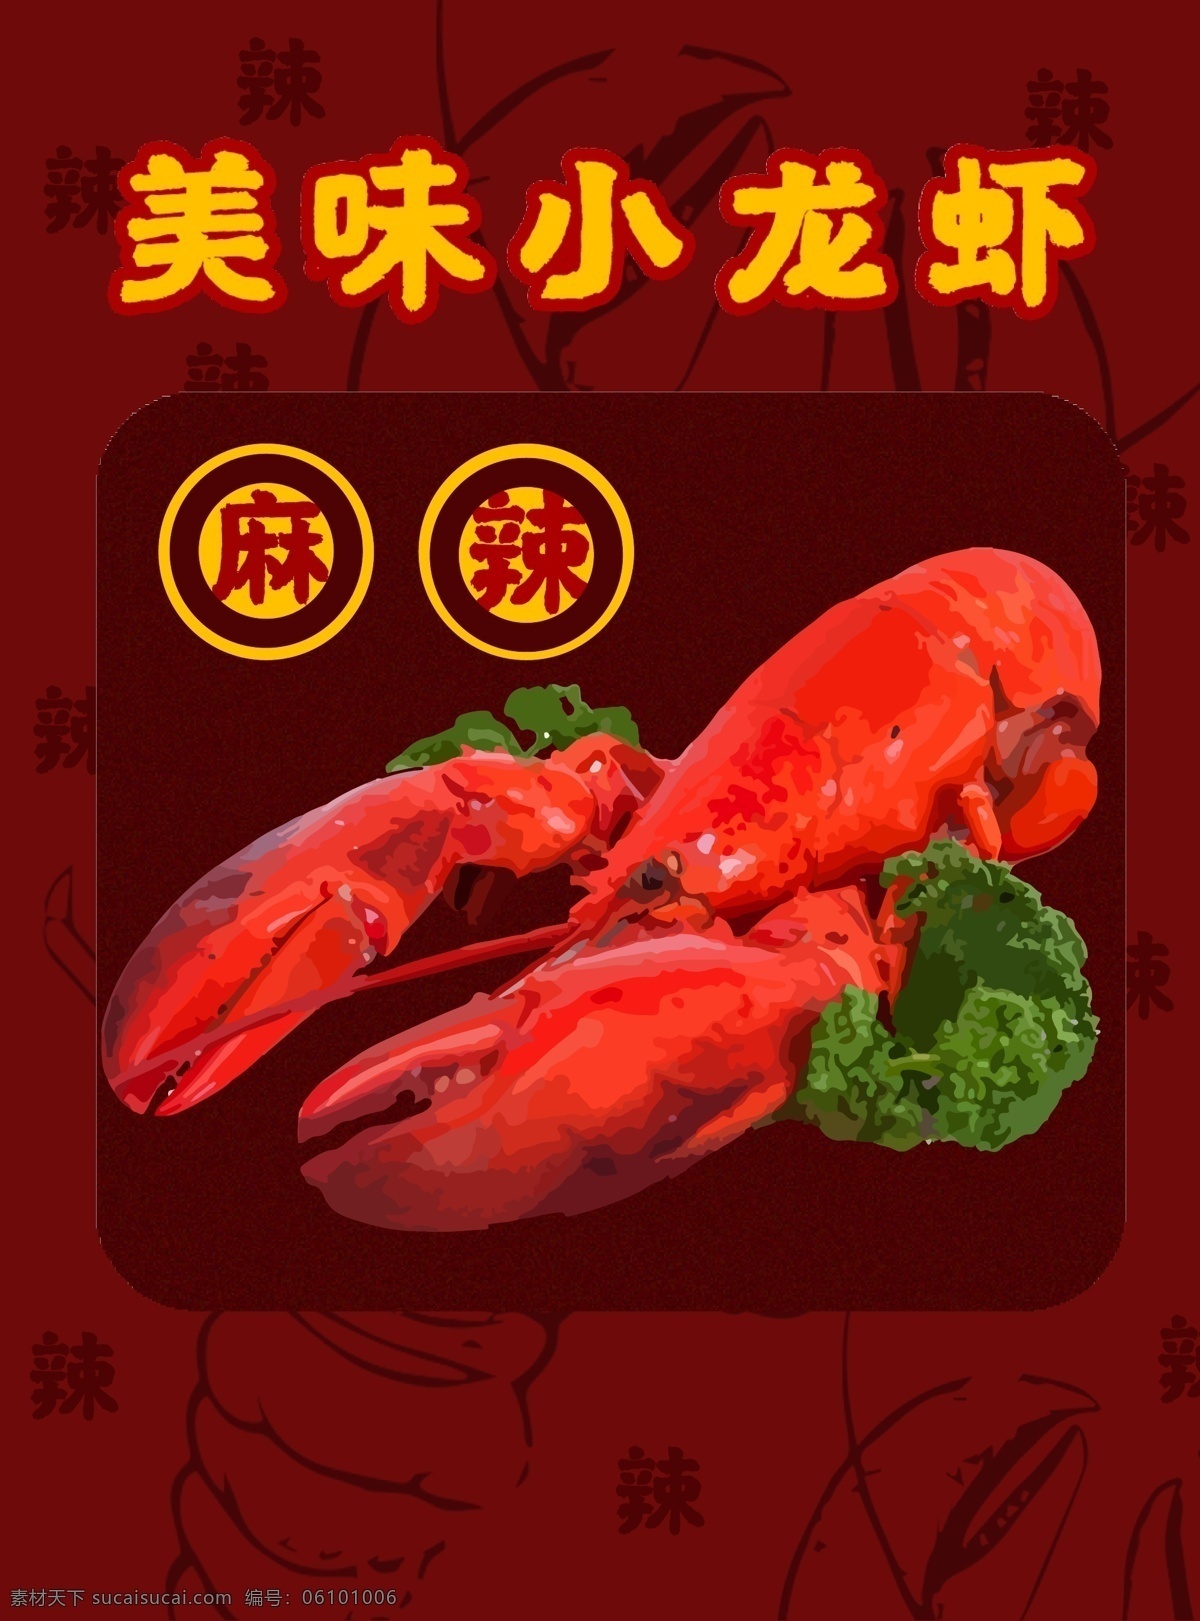 海鲜 美食 宵夜 麻辣 小 龙虾 包装 插画 小龙虾